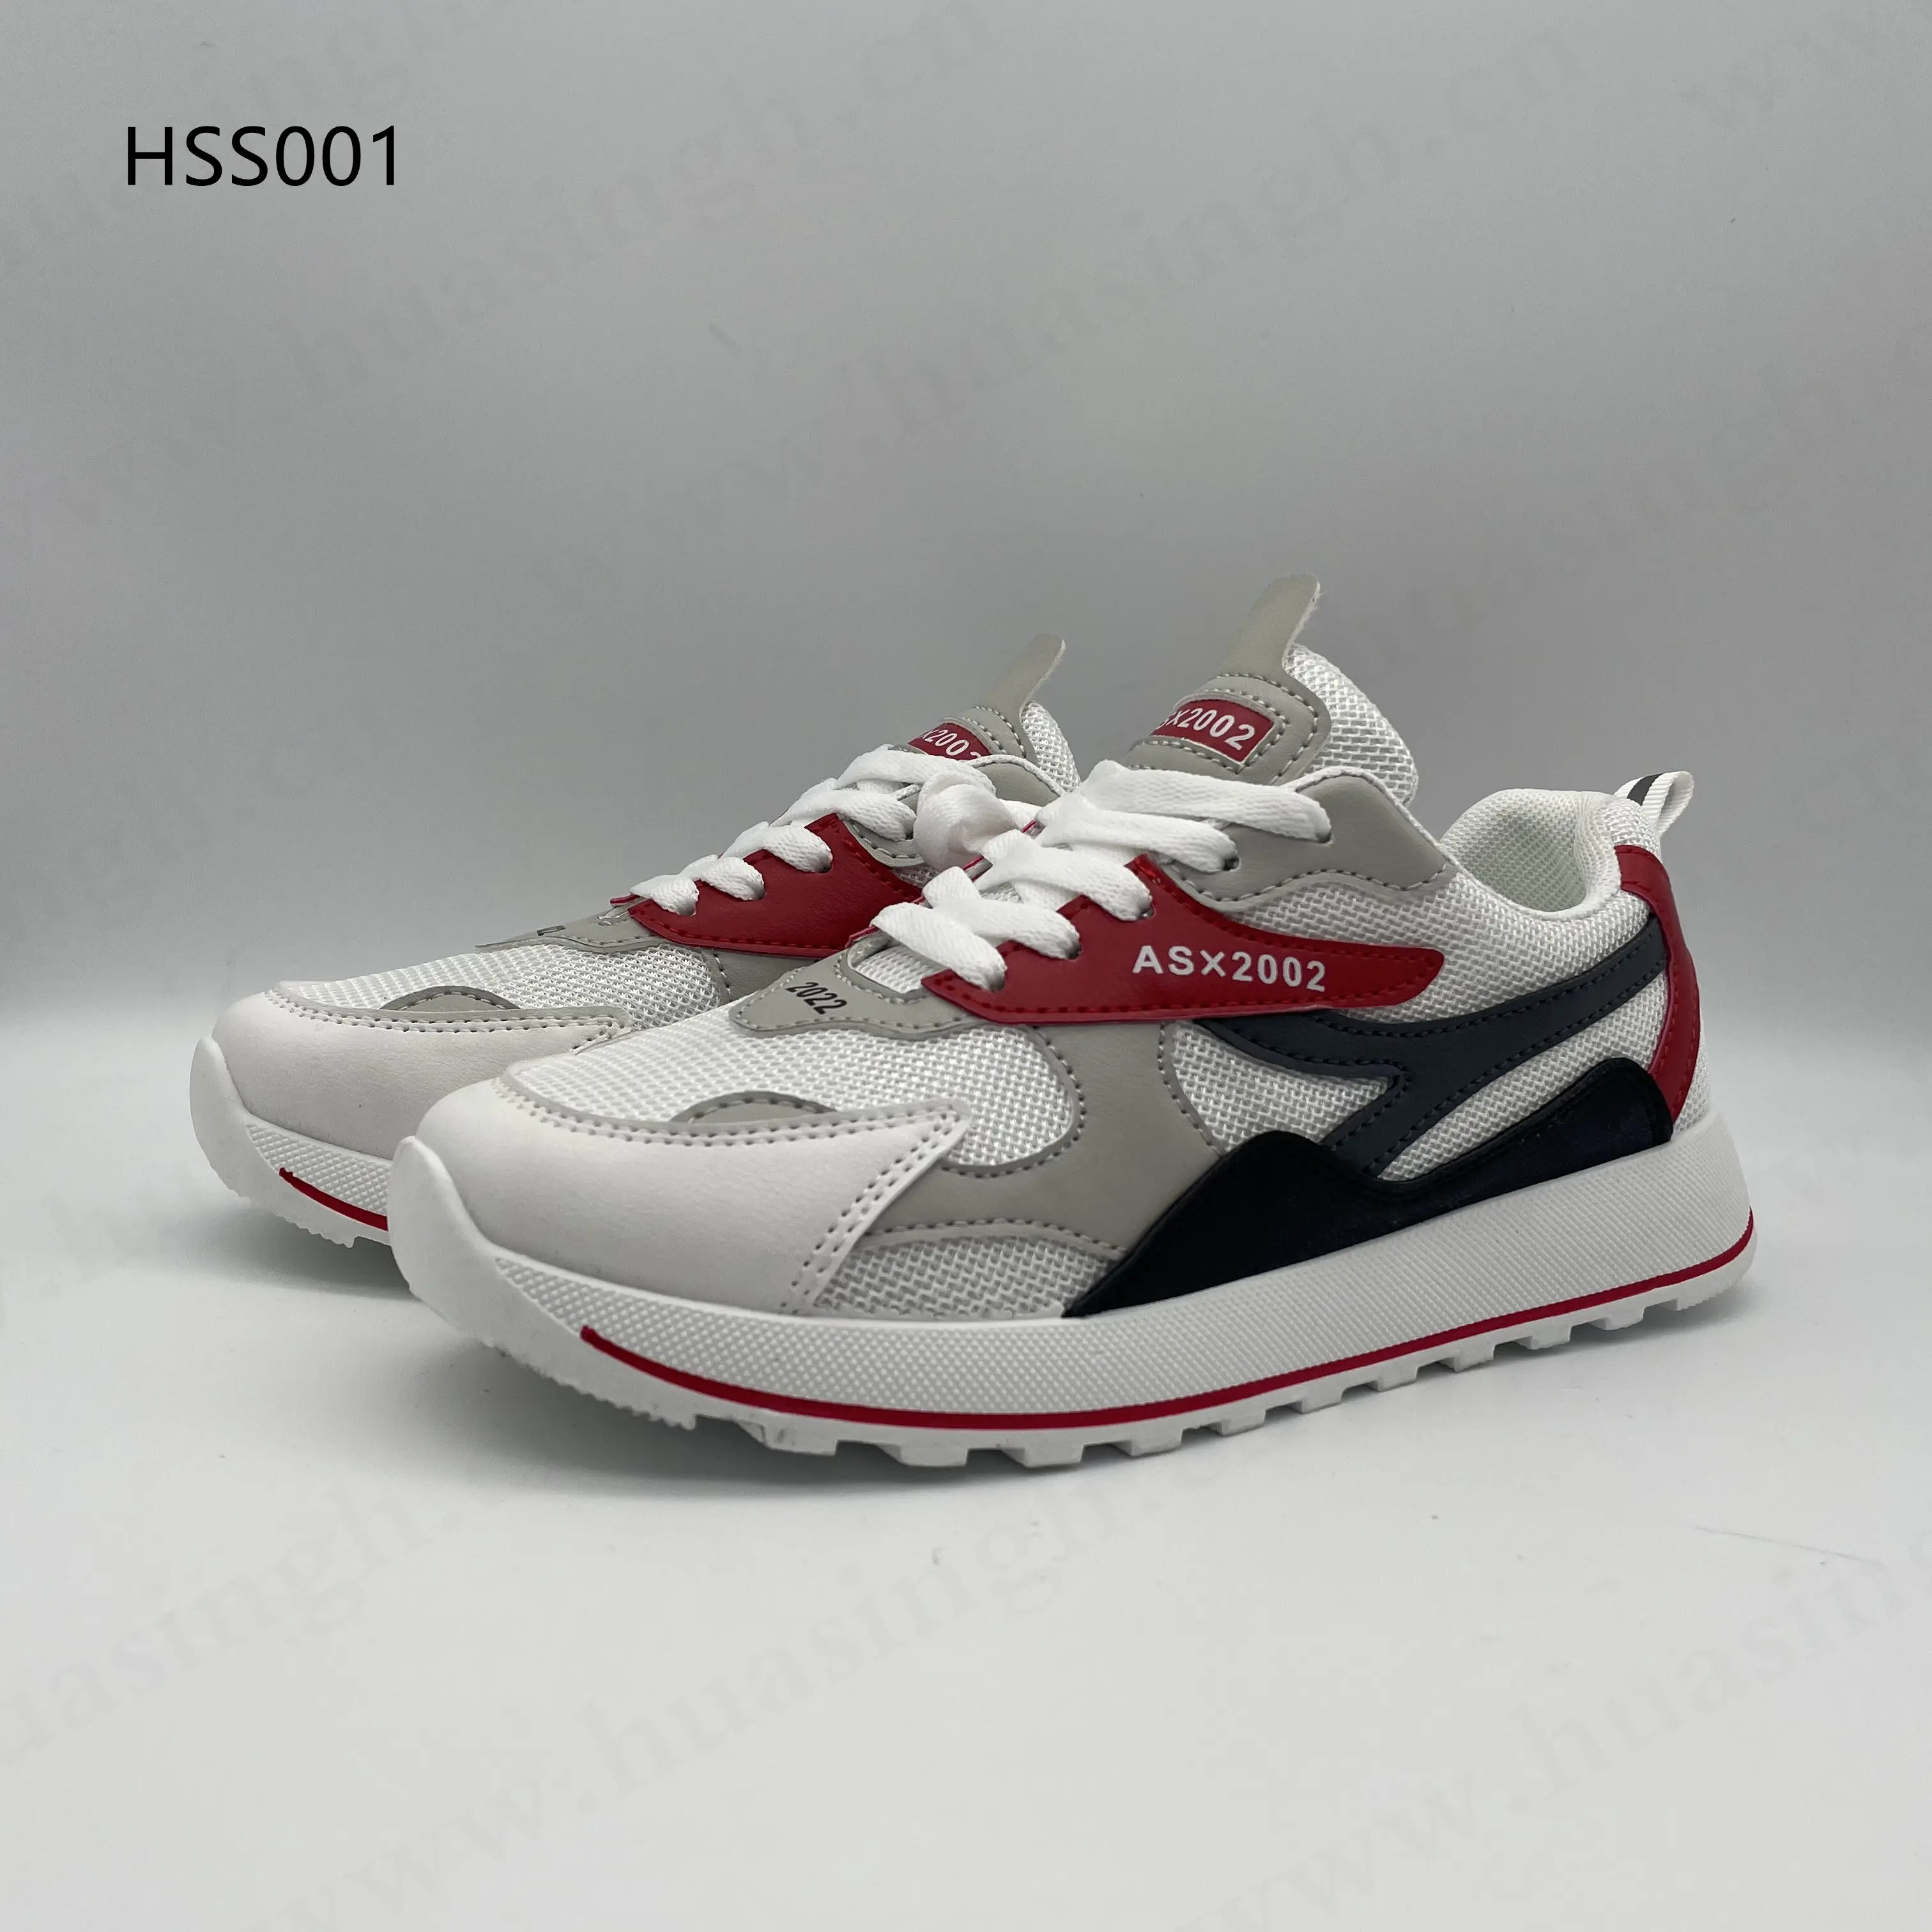 ZH,2022 новый стиль, дышащая вязаная повседневная обувь для фитнеса, оптовая продажа, амортизирующая уличная спортивная обувь с защитой от запаха HSS001